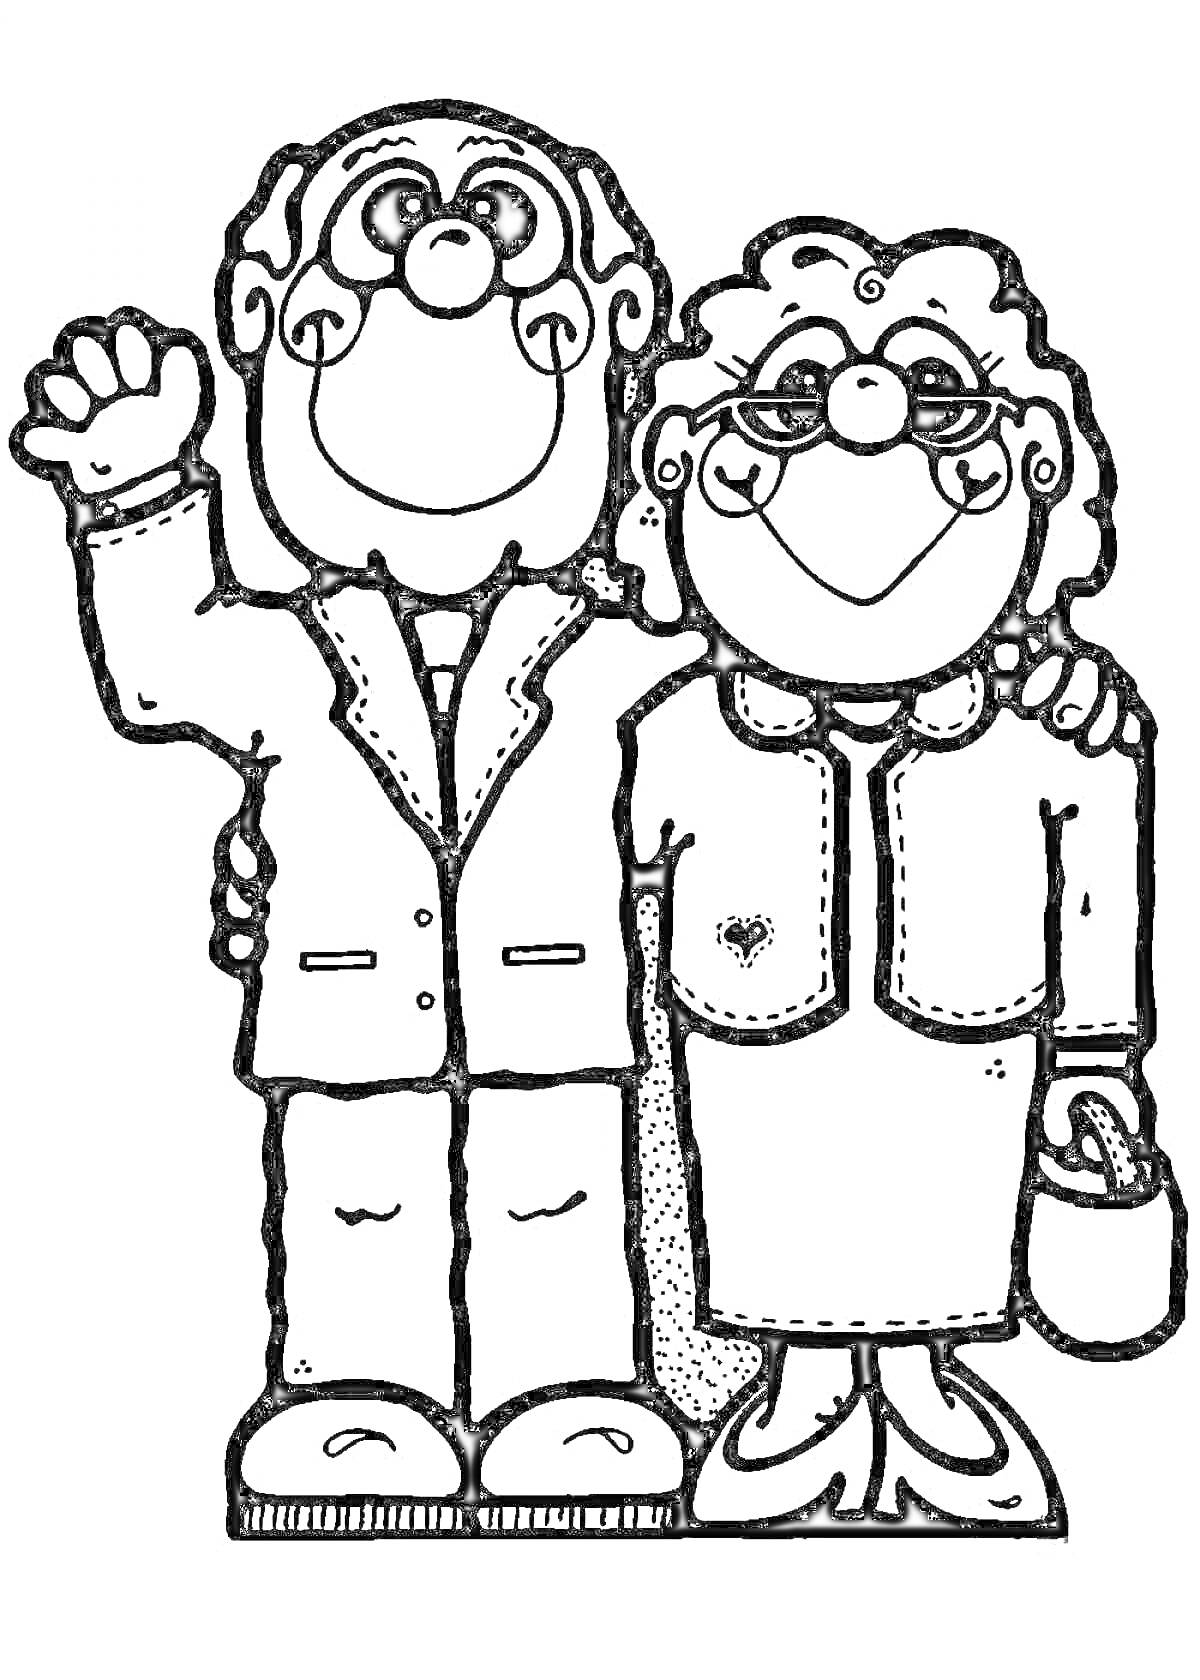 Раскраска Пожилые мужчина и женщина в очках, мужчина в костюме и галстуке, женщина в юбке и пиджаке с сумкой, мужчина машет рукой.